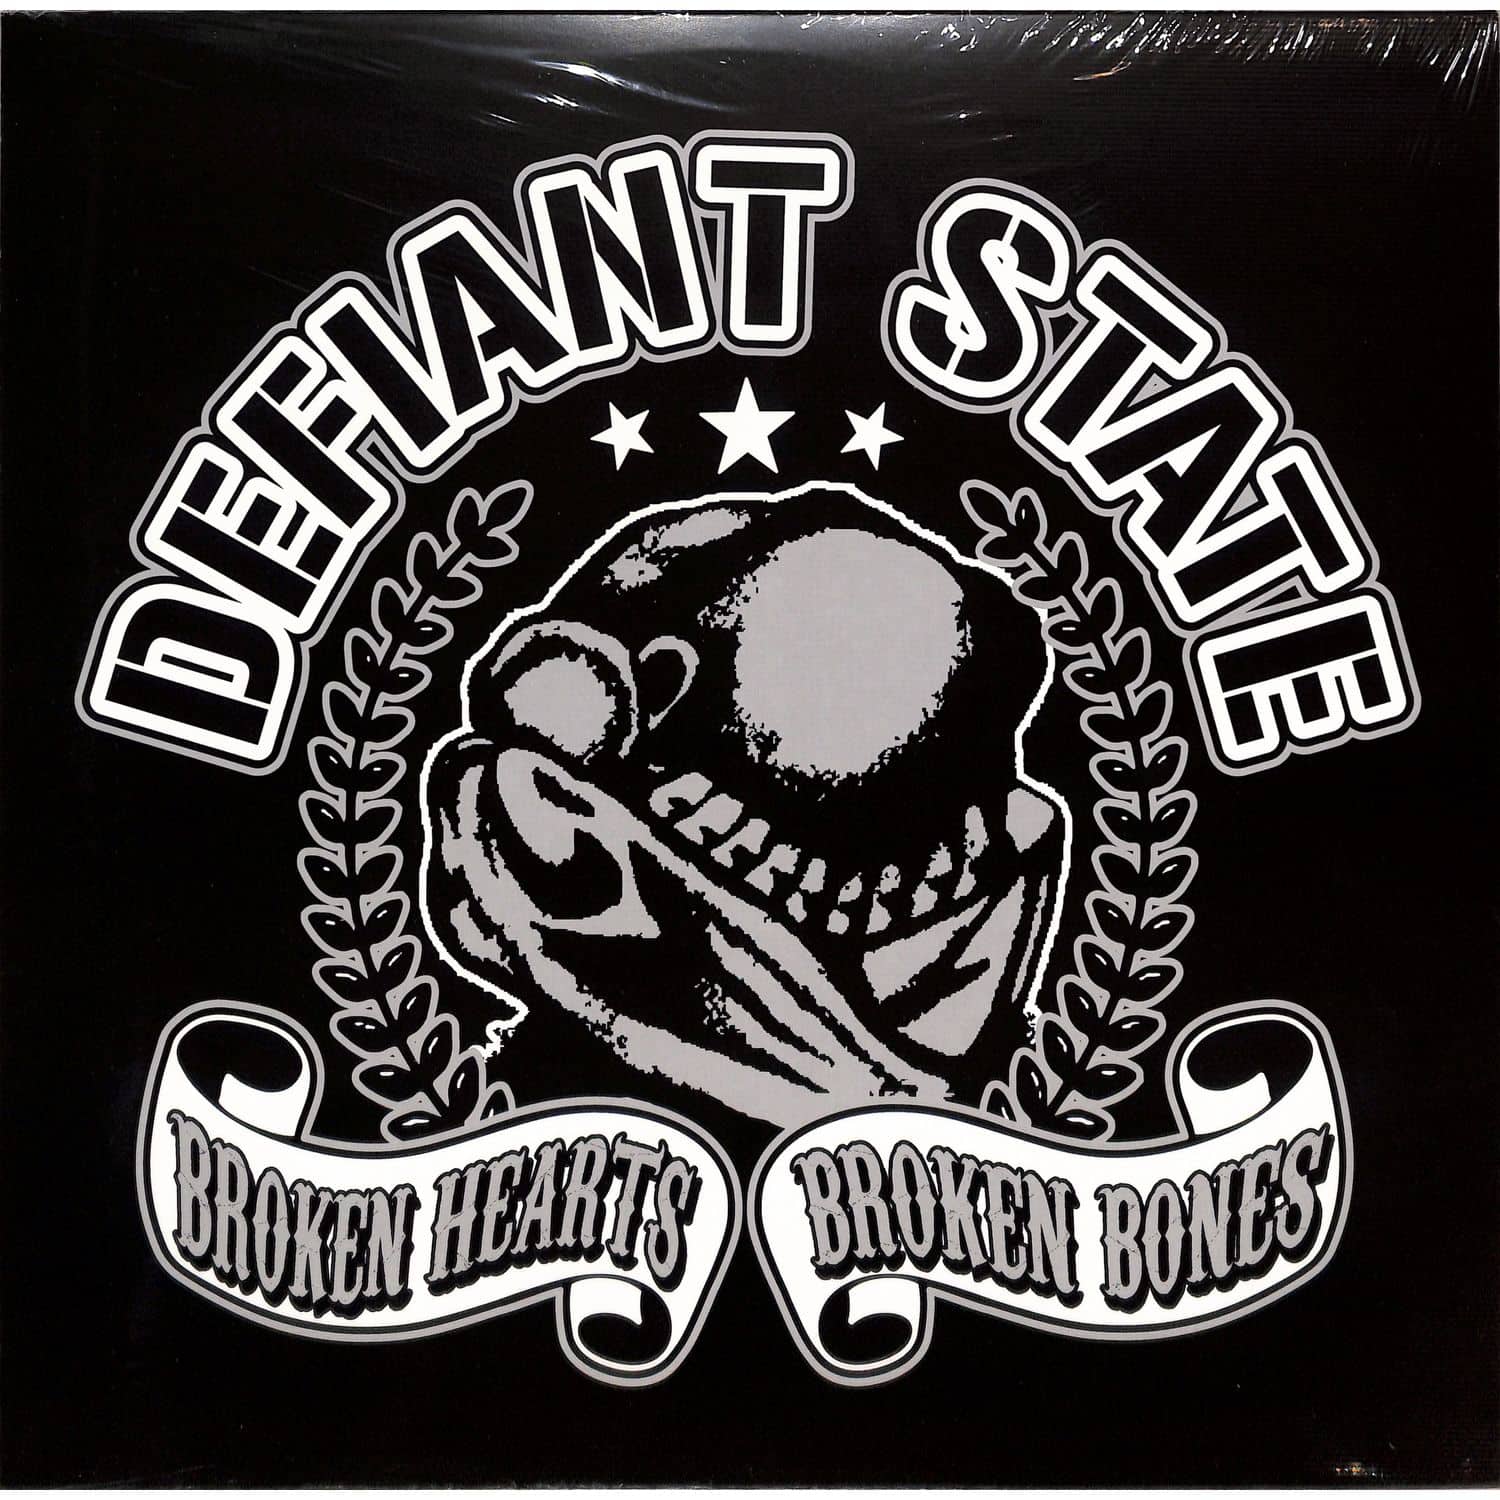 Defiant State - BROKEN HEARTS - BROKEN BONES 